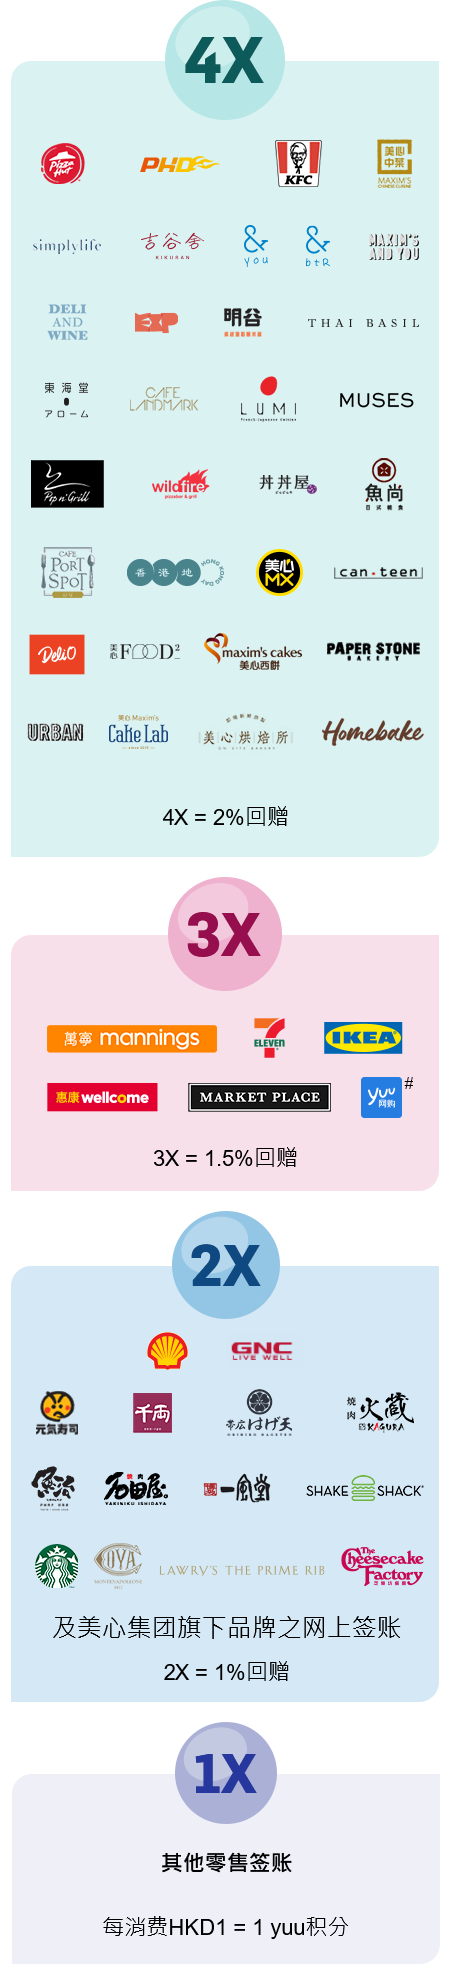 其他零售签账每消费 HKD1 = 1 yuu积分, 美心集团旗下其他品牌之食肆及分店 2X = 1%回赠, 3X = 1.5%回赠, 4X = 2%回赠